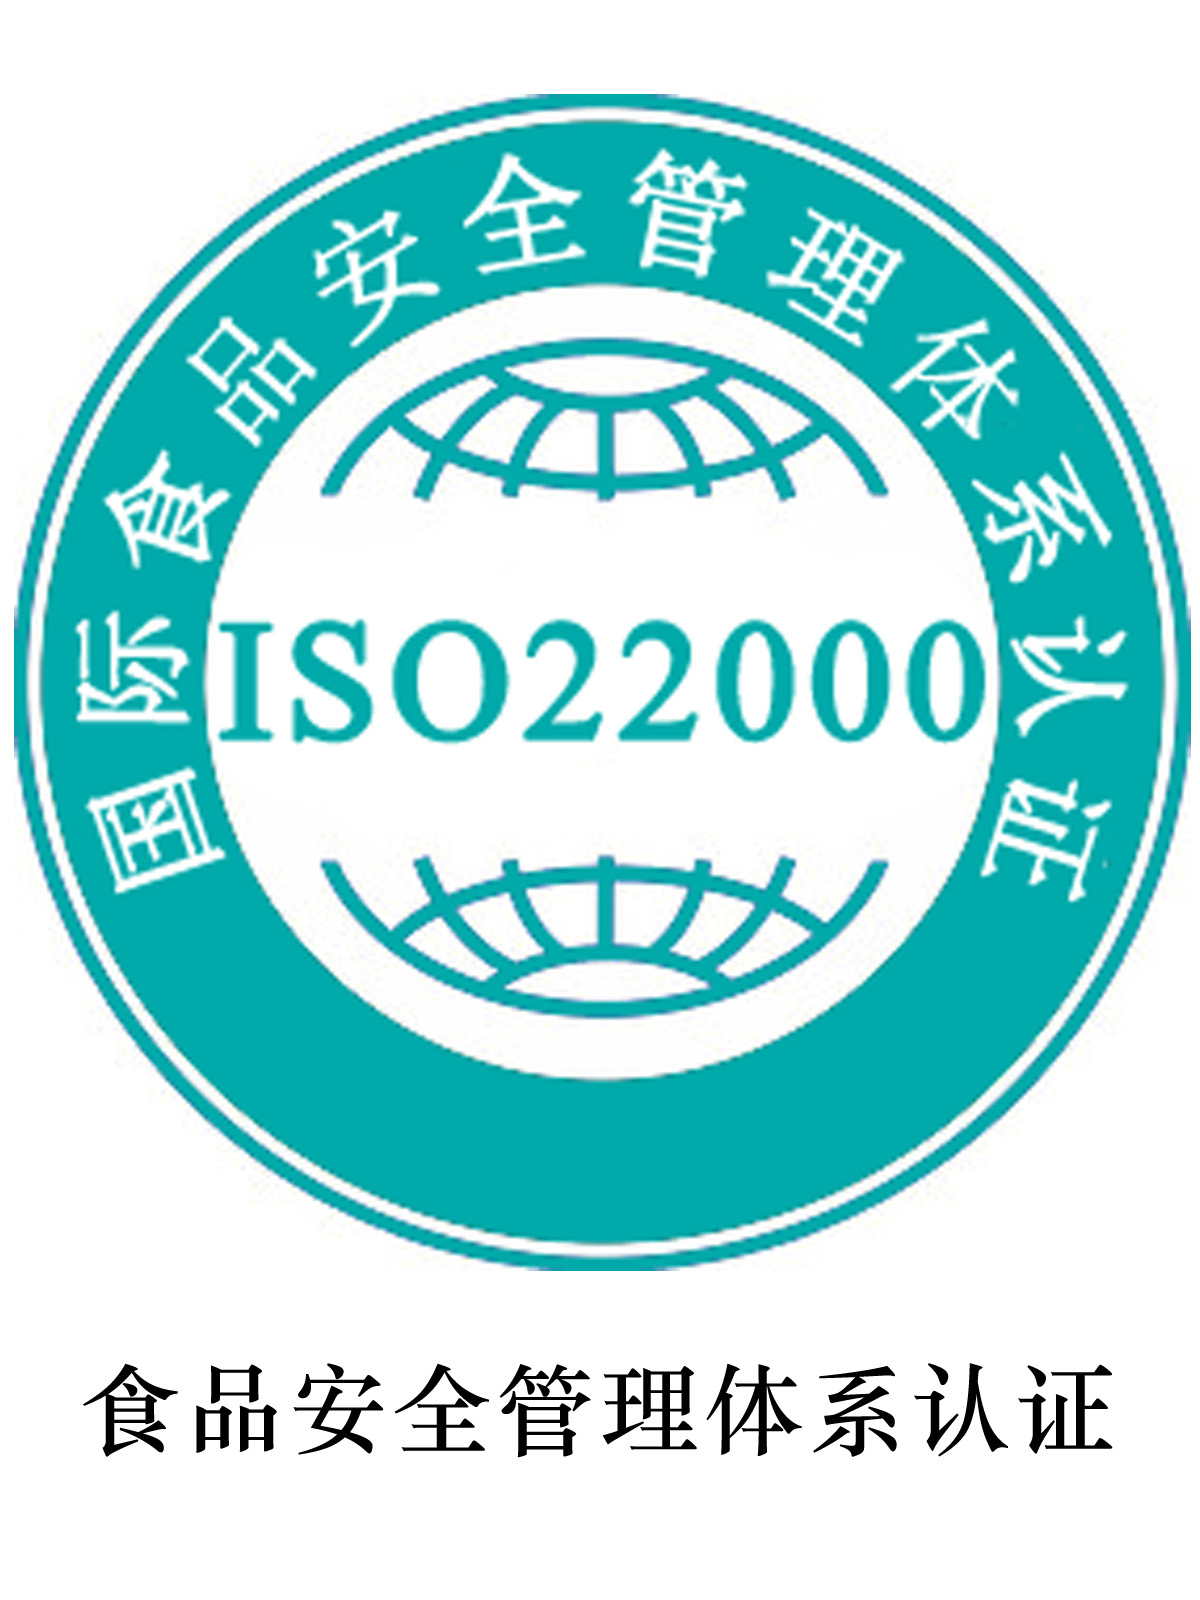 唐山ISO22000认证申请流程 中正企业咨询